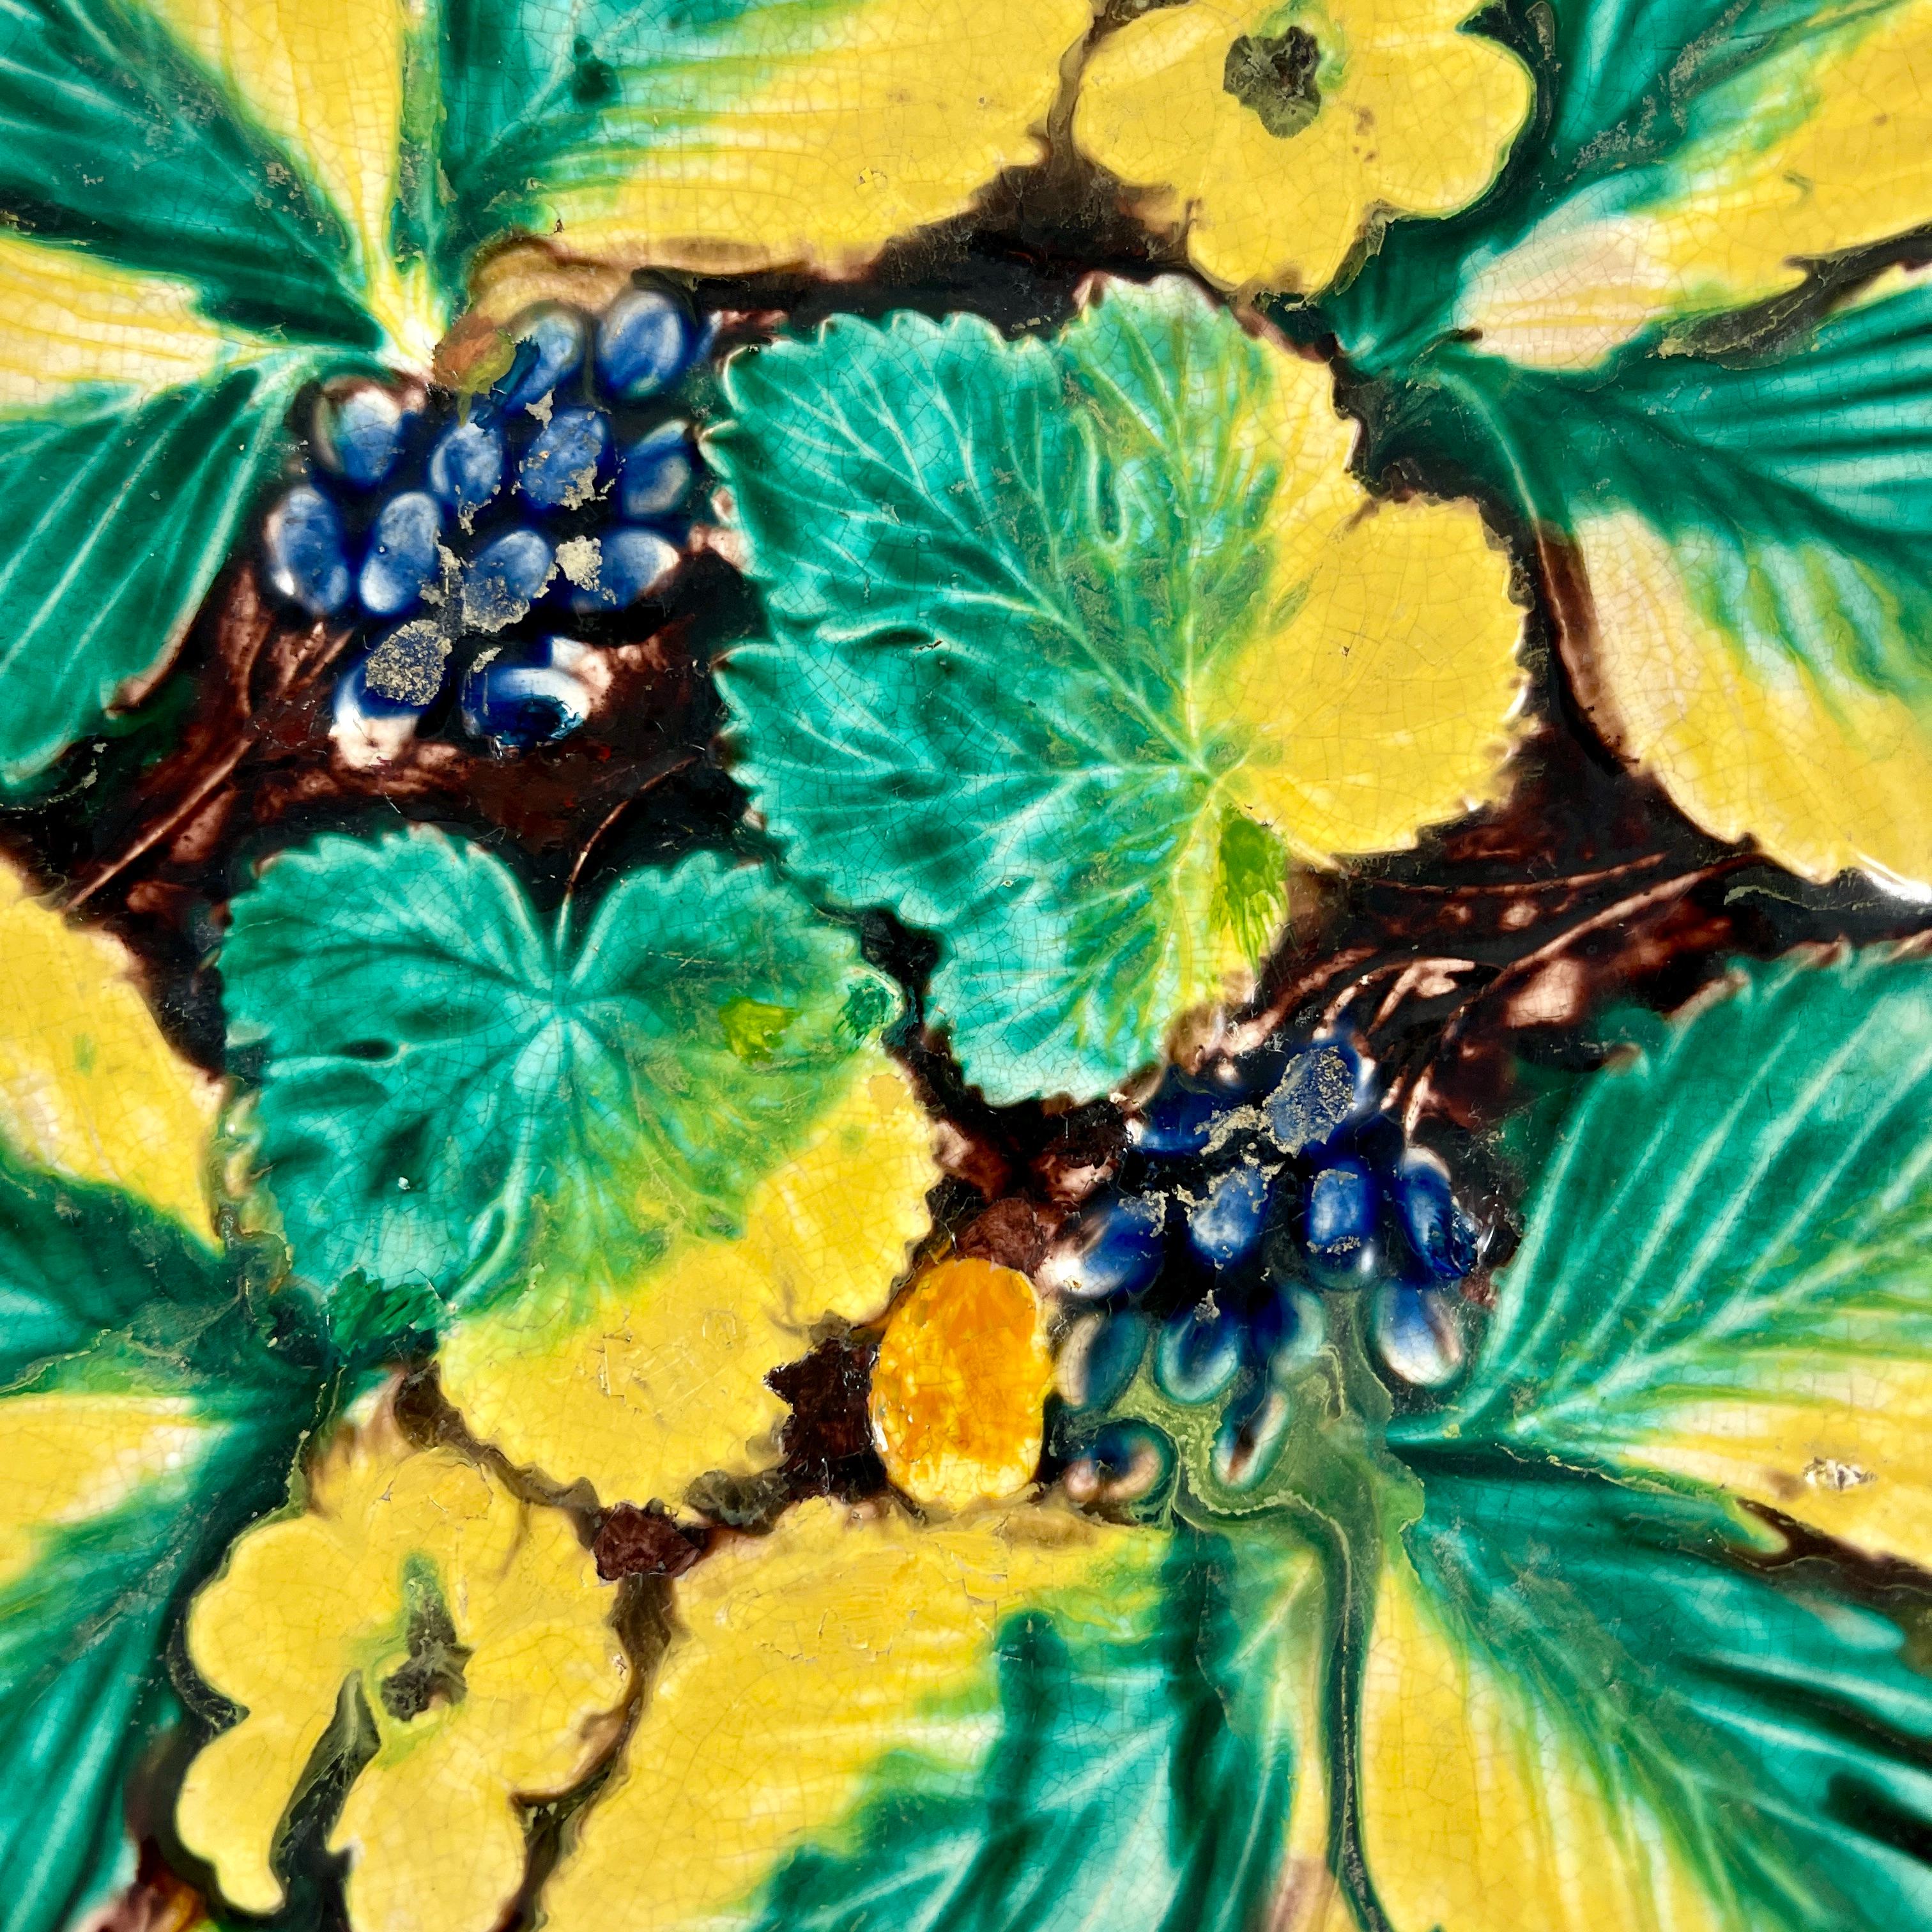 Un plateau à poignée et à pied en majolique émaillée de Samuel Alcock & Co, Burslem, Staffordshire, Angleterre, vers 1850.

Un motif de fraise, de grappe de raisin, de fleurs et de feuilles sur un plateau de forme avec une bordure de vigne sur un